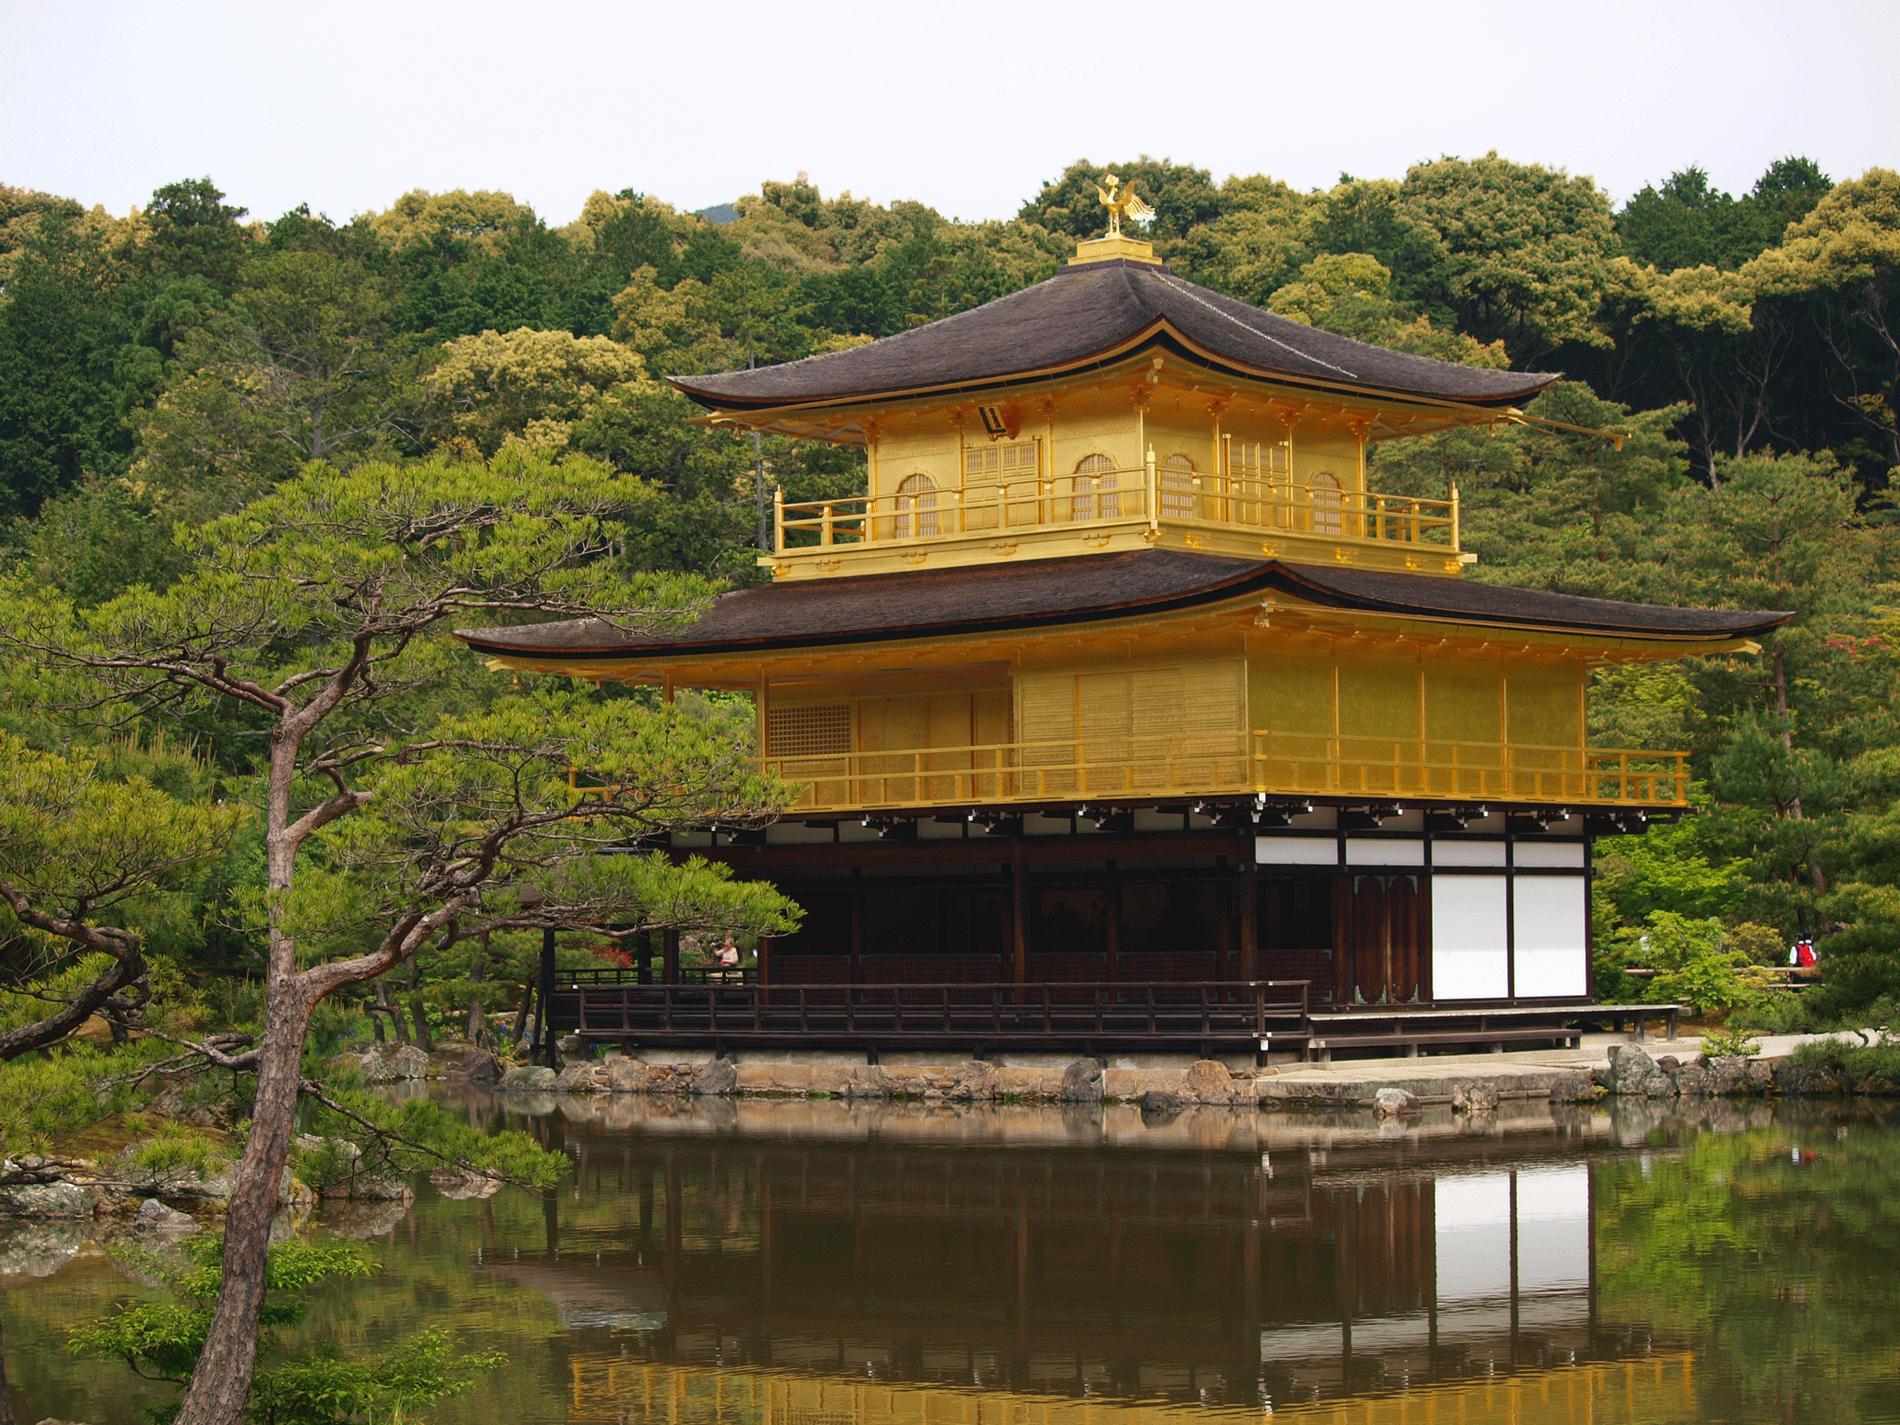 11. Kyoto, Japan En romantisk bergsstad som förr var Japans huvudstad. Här finns mängder med tempel och 17 världsarv, där berömda Gyllene paviljongens tempel ingår. Staden har även en gincocktail uppkallad efter sig. Geishakulturen är stark, men här kallas en geisha för geiko.
Missa inte: Det välbesökta templet Kiyumizu, med Kyotos bästa utsikt. Flyg till Kyoto